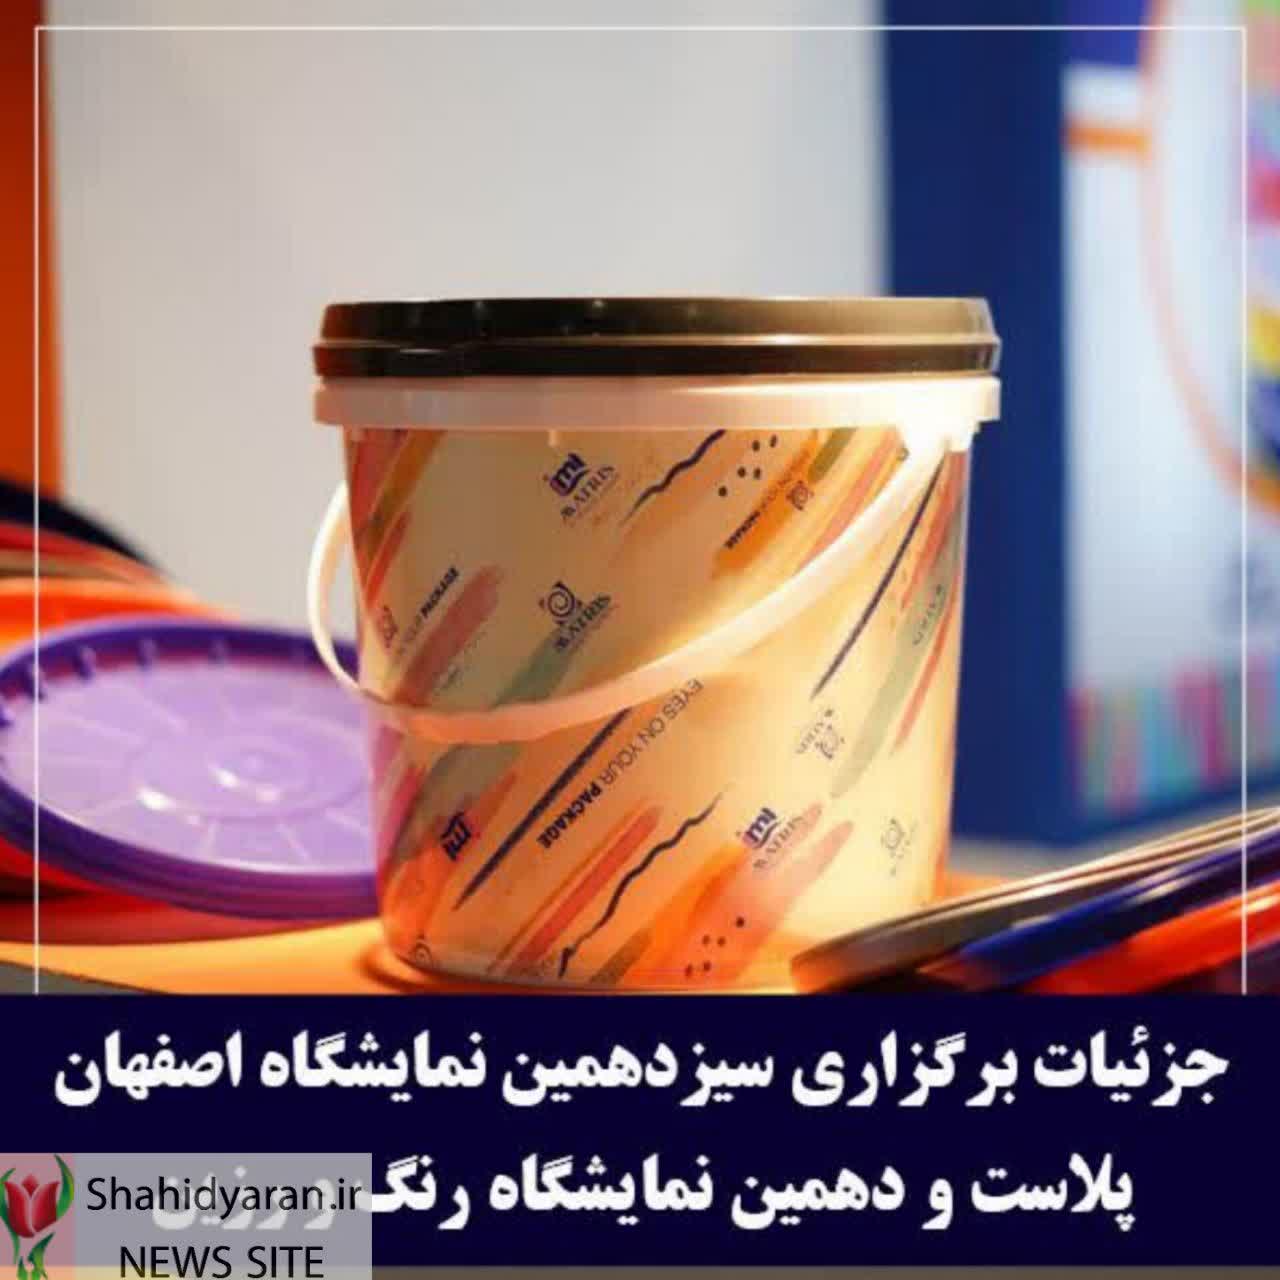 برگزاری بزرگ ترین رویداد حوزه پلاستیک استان اصفهان از ۱۹ اردیبهشت ماه